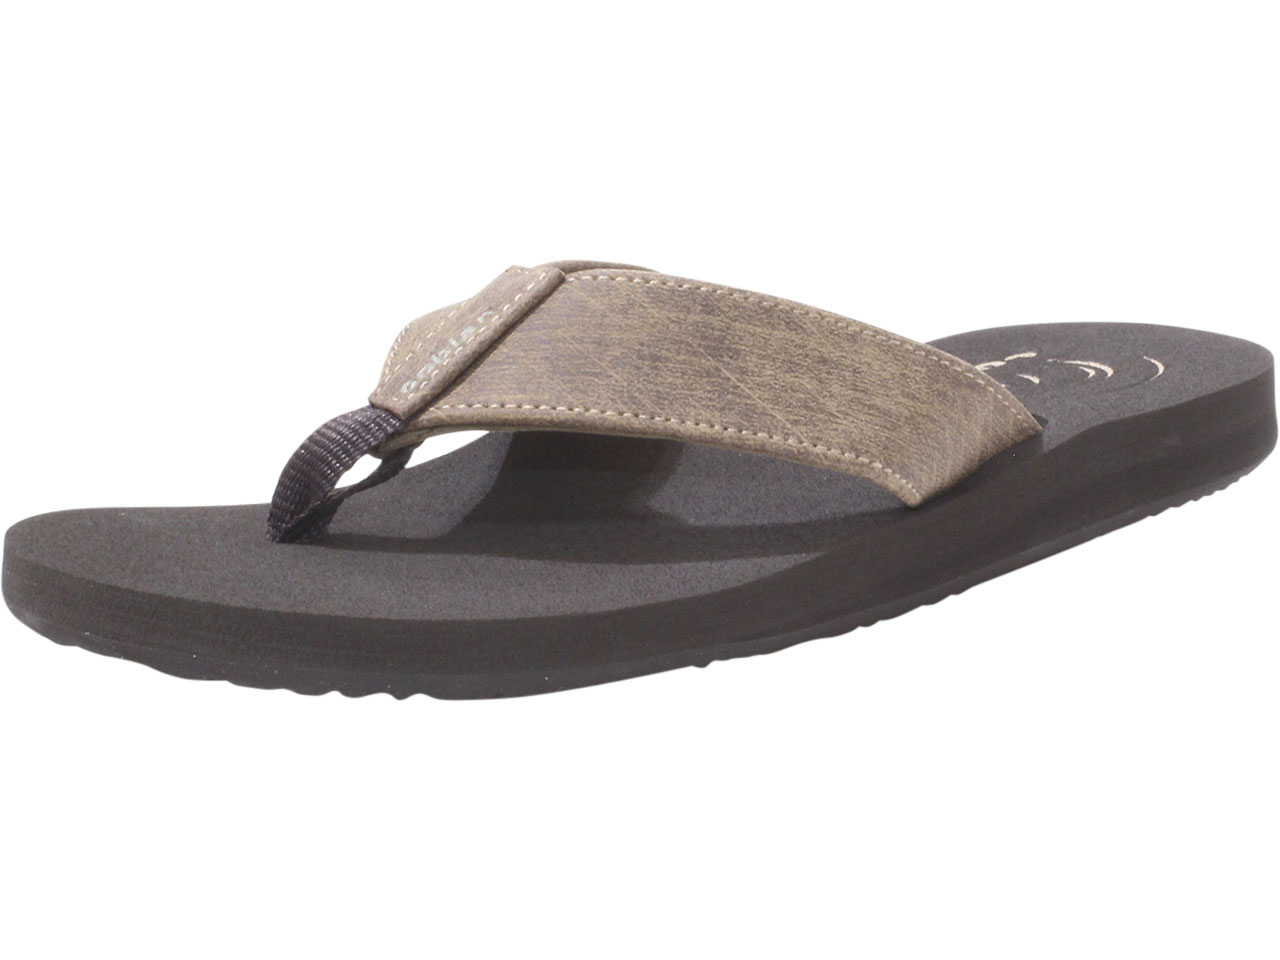 UPC 840207156816 product image for Cobian Men's Floater 2 Flip Flops Sandals Mocha Sz: 8 FLT18 - Brown - 8 D(M) US | upcitemdb.com